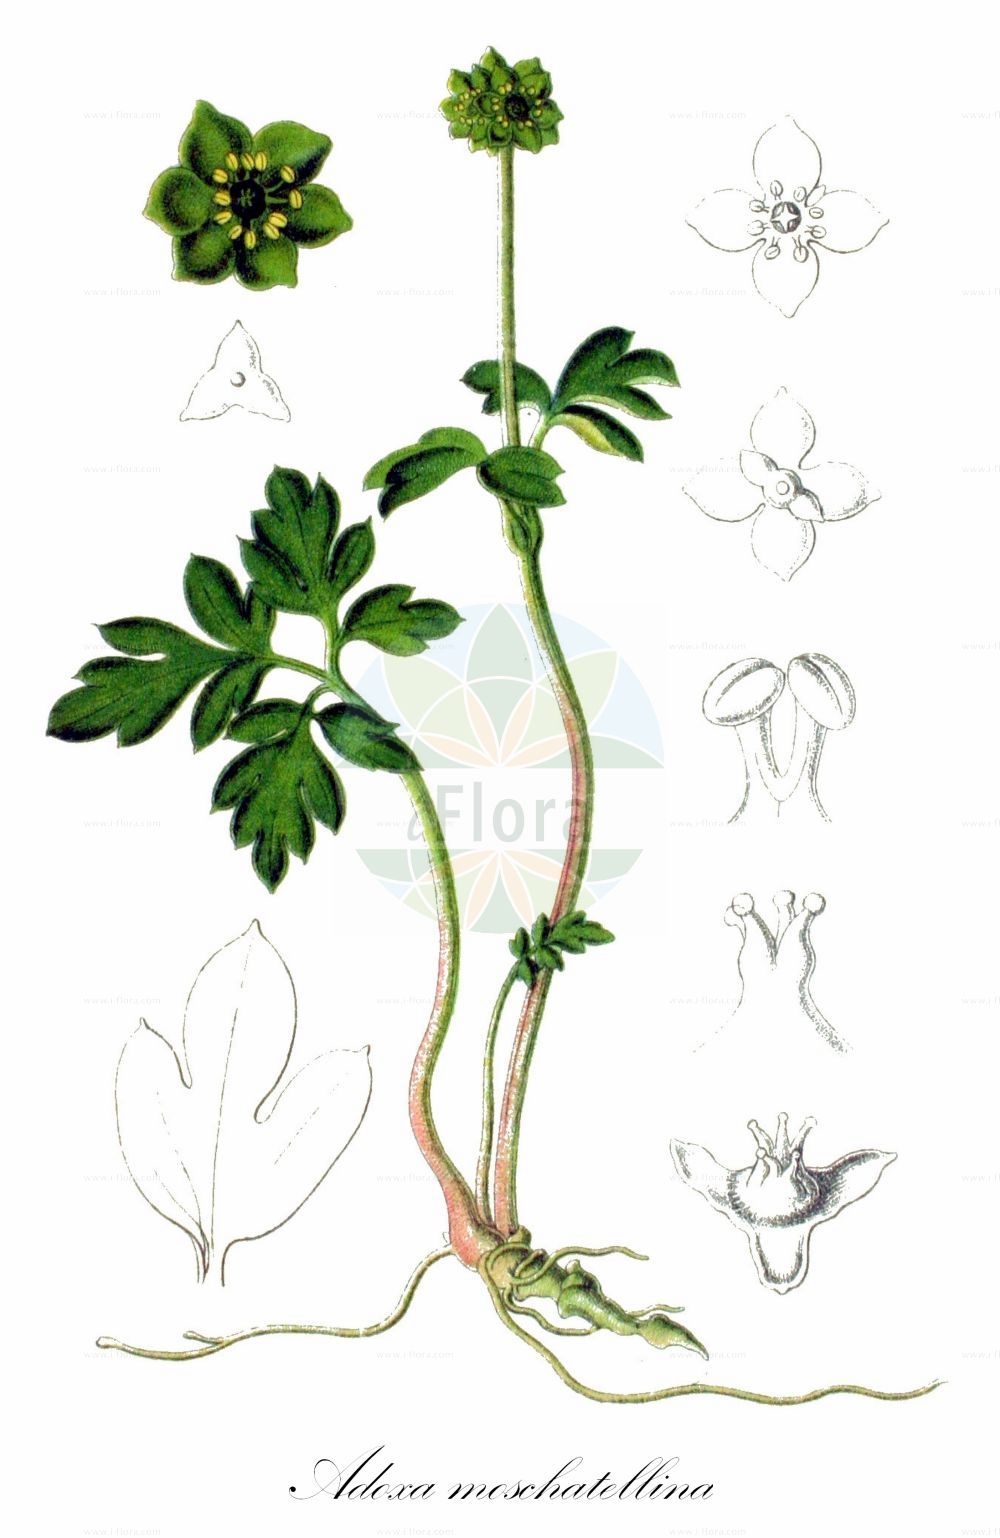 Historische Abbildung von Adoxa moschatellina (Moschuskraut - Moschatel). Das Bild zeigt Blatt, Bluete, Frucht und Same. ---- Historical Drawing of Adoxa moschatellina (Moschuskraut - Moschatel). The image is showing leaf, flower, fruit and seed.(Adoxa moschatellina,Moschuskraut,Moschatel,Adoxa moschatellina,Moschuskraut,Bisamkraut,Moschatel,Muskroot,Townhall Clock,Adoxa,Moschuskraut,Moschatel,Adoxaceae,Moschuskrautgewächse,Adoxa family,Blatt,Bluete,Frucht,Same,leaf,flower,fruit,seed,Sturm (1796f))